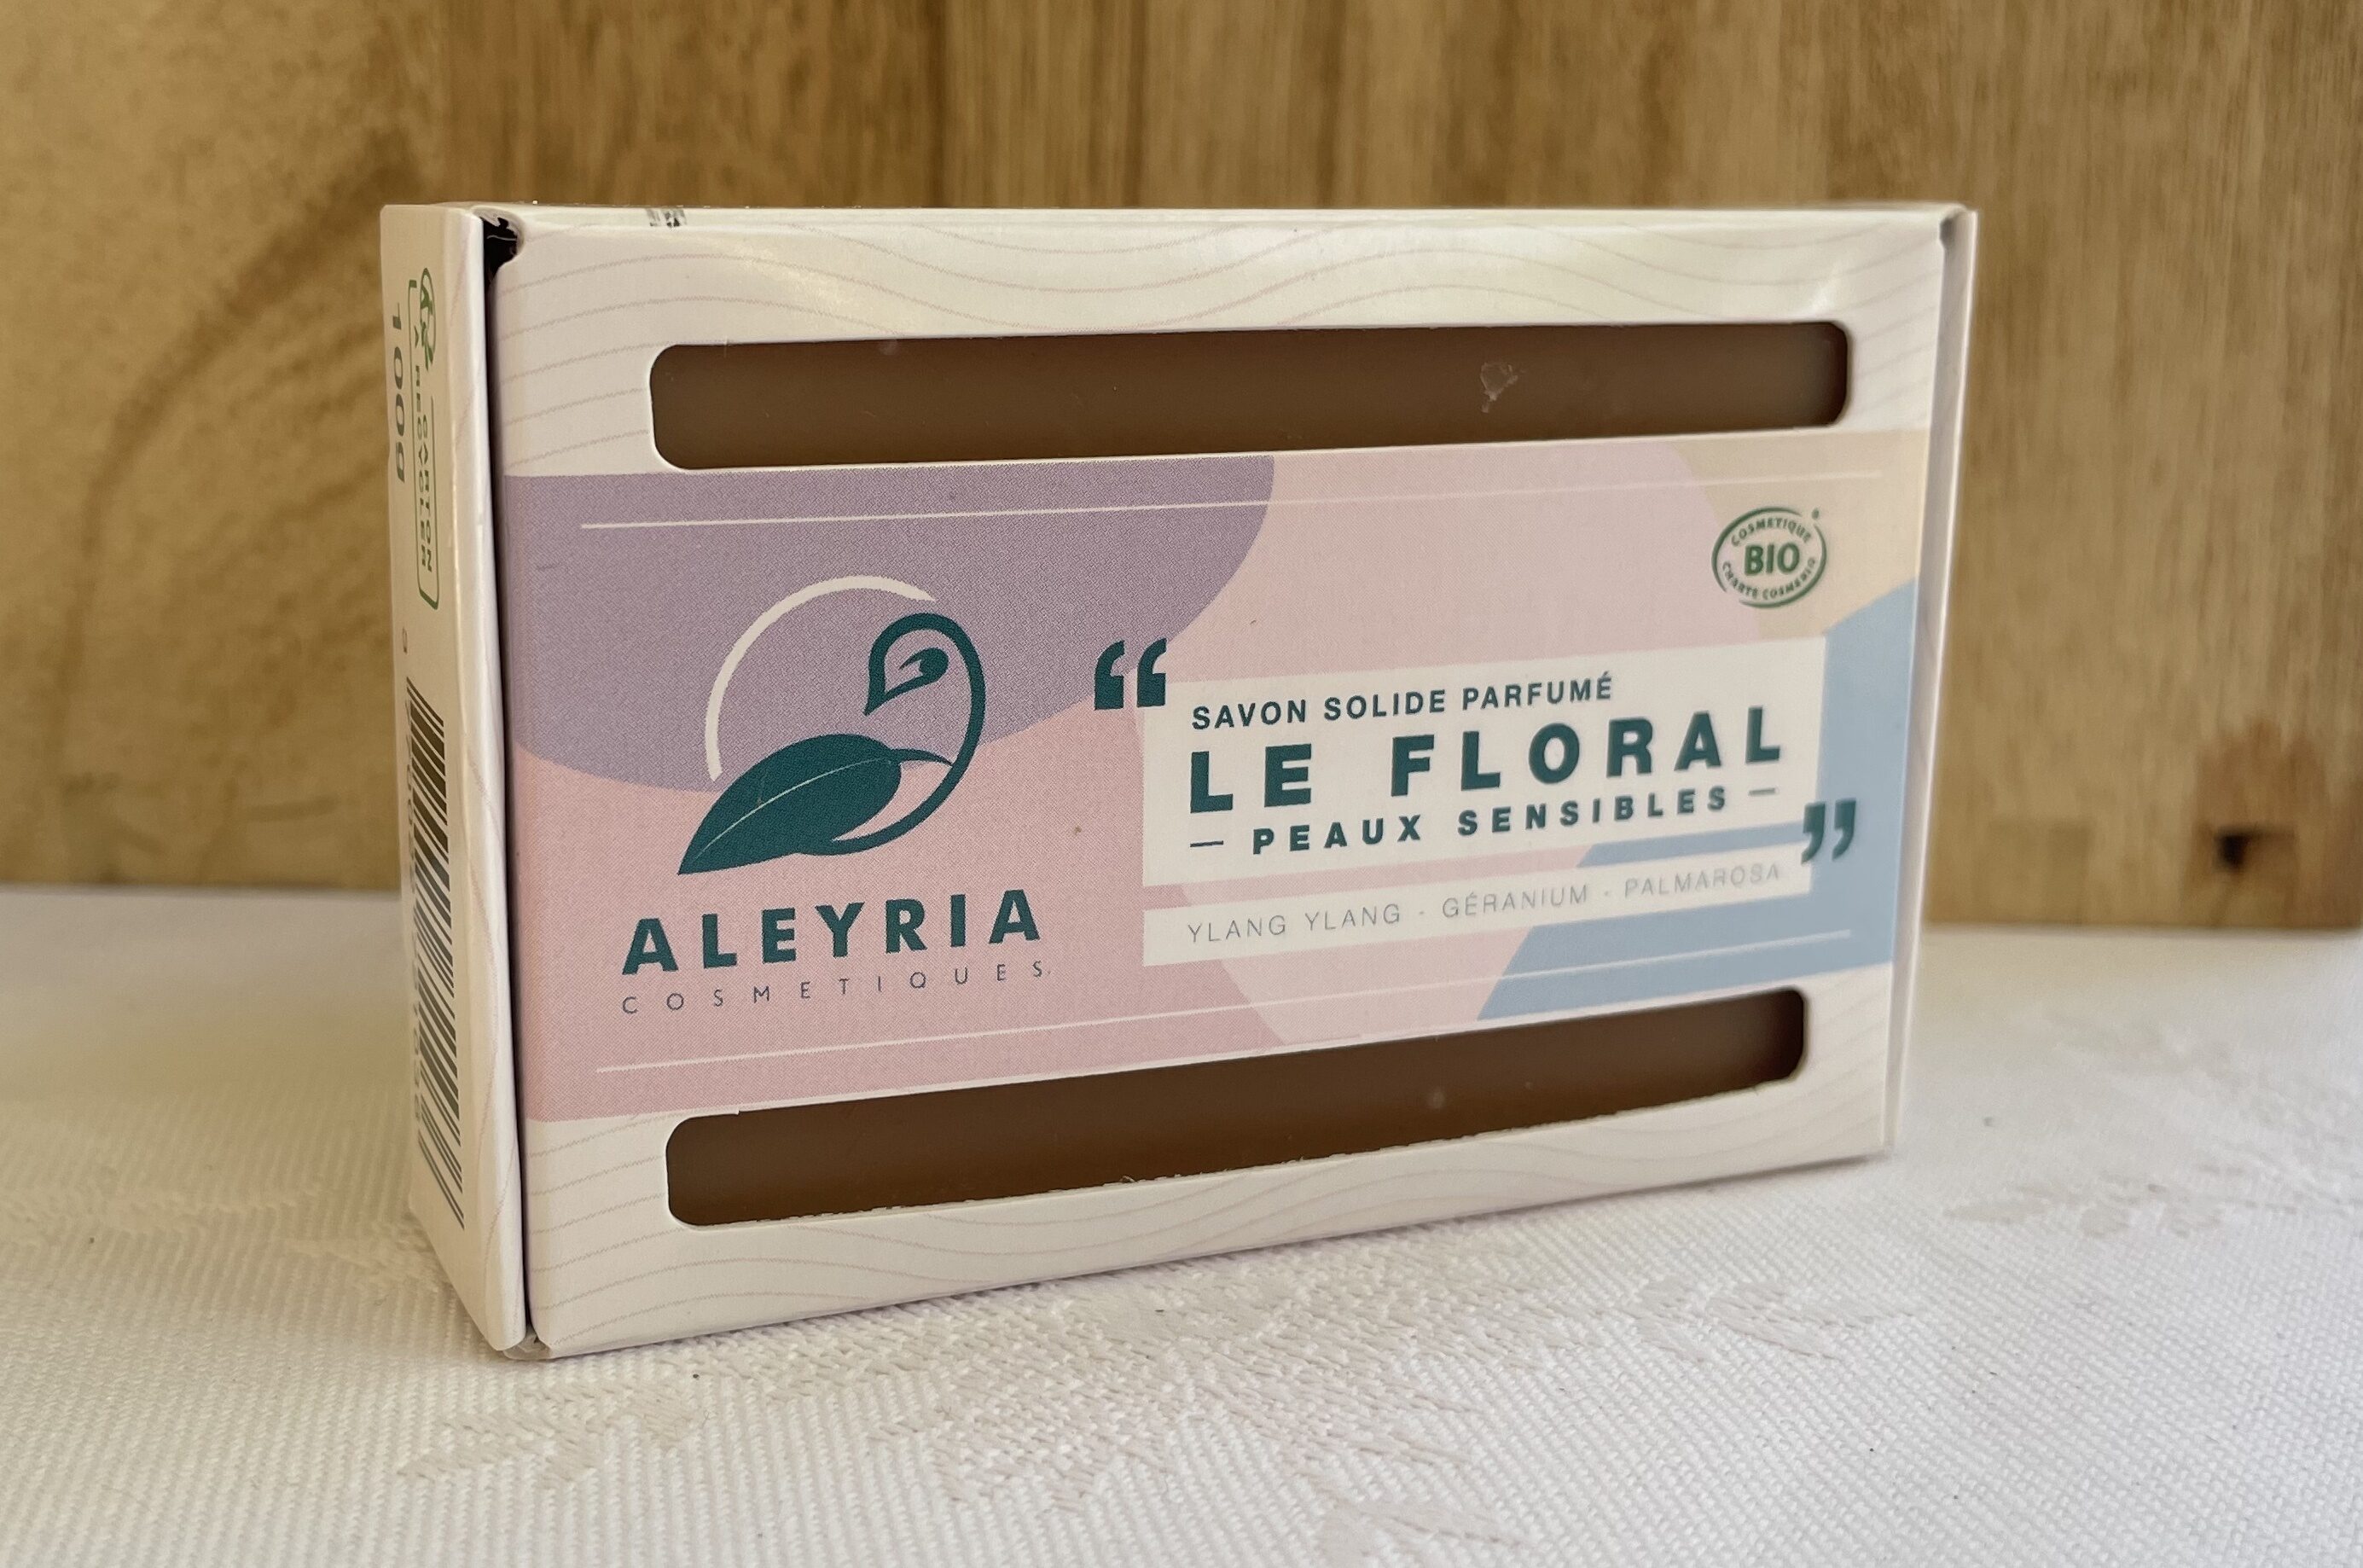 Savon solide Le floral peaux sensibles - Aleyria Cosmétiques - Product - fr